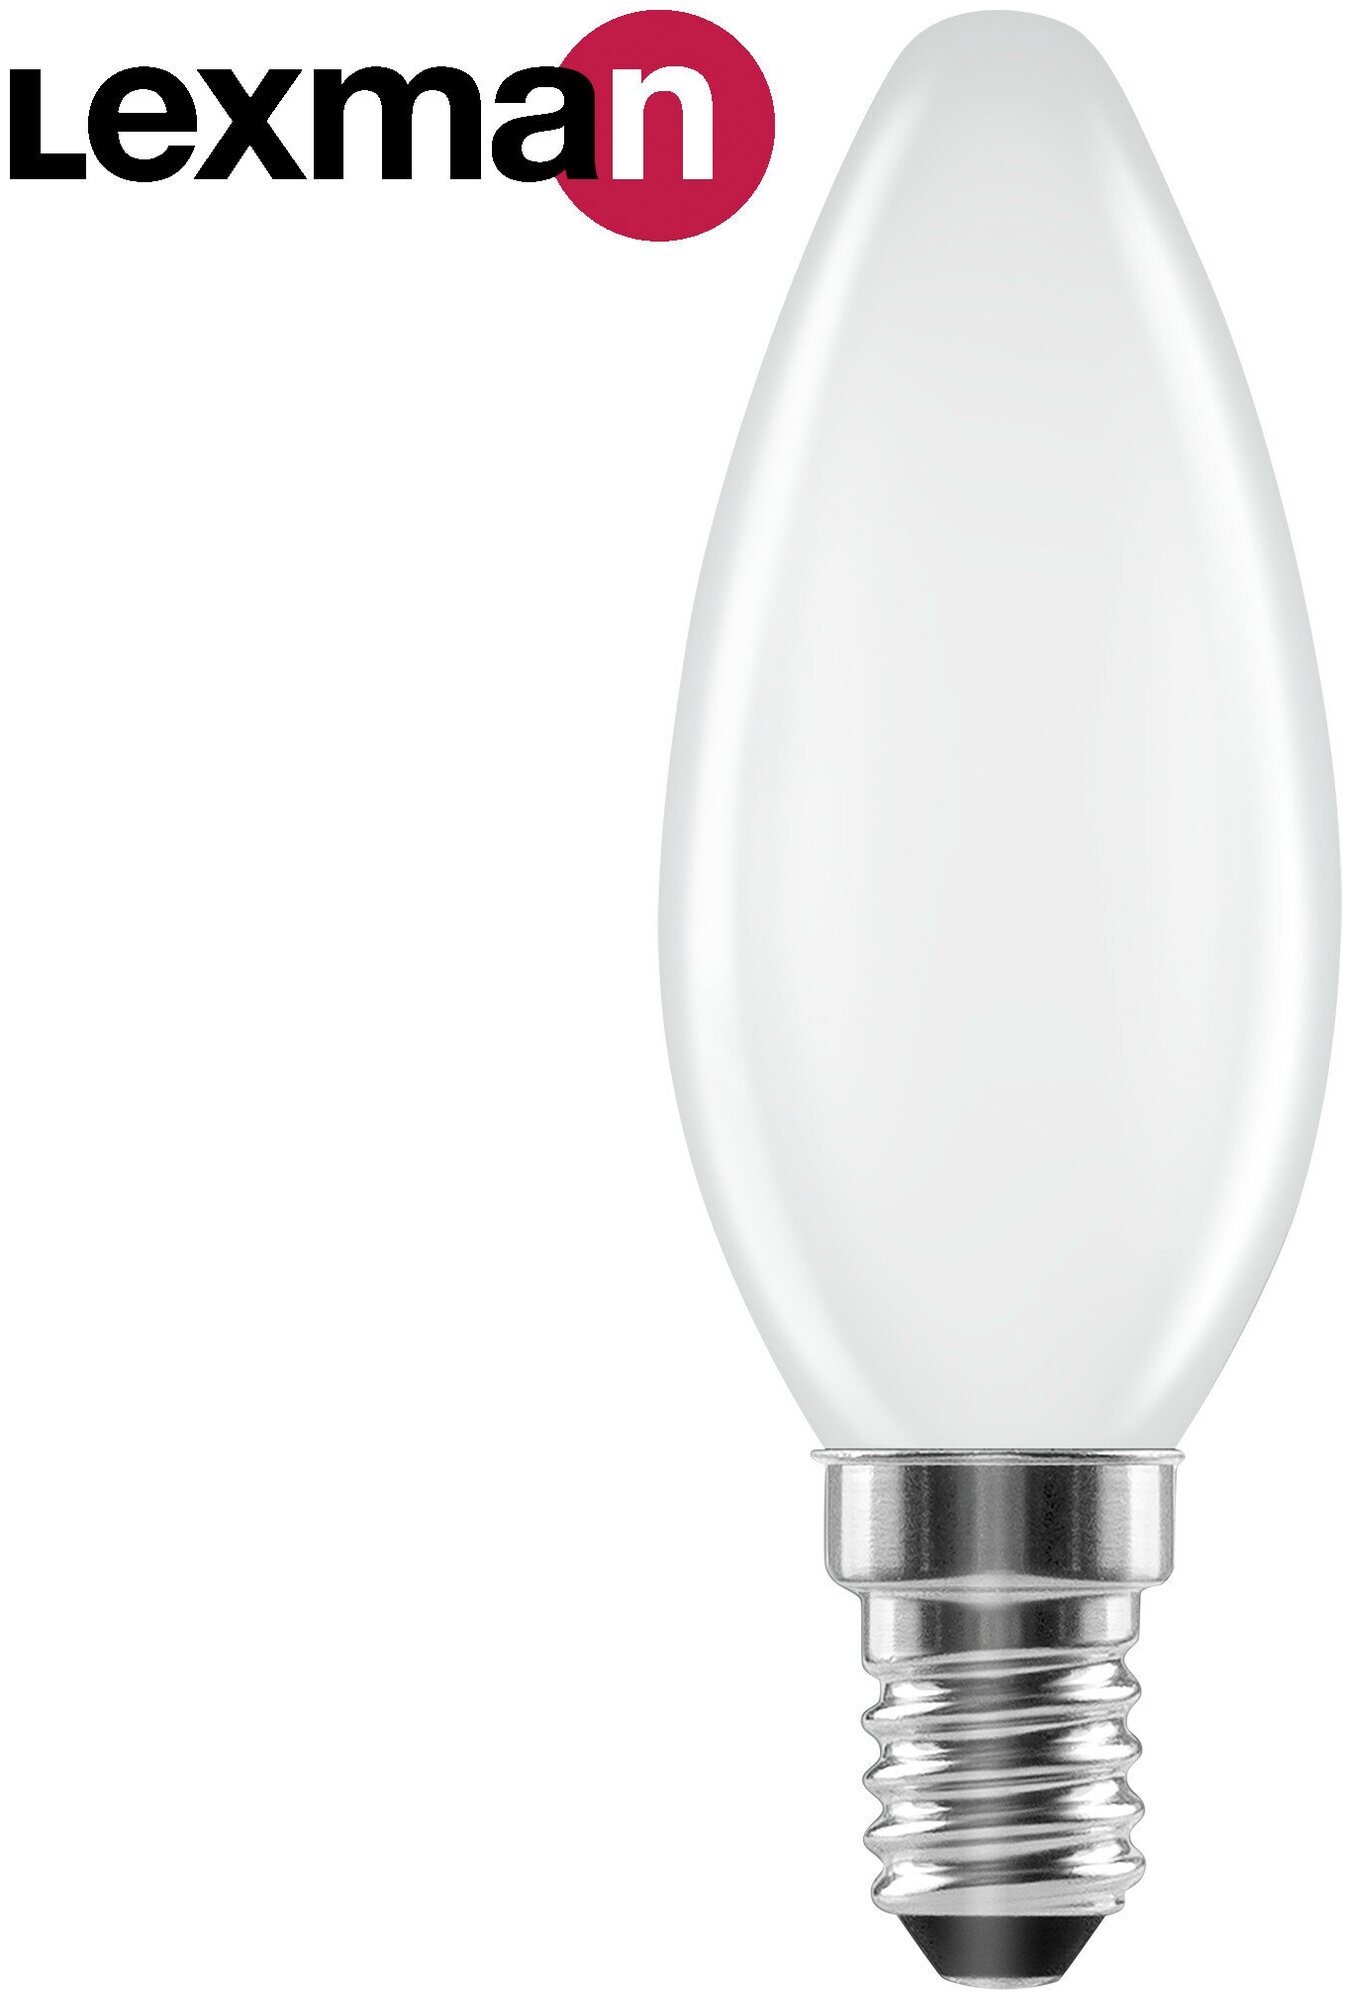 Лампа светодиодная Lexman E14 220-240 В 5 Вт свеча матовая 600 лм теплый белый свет